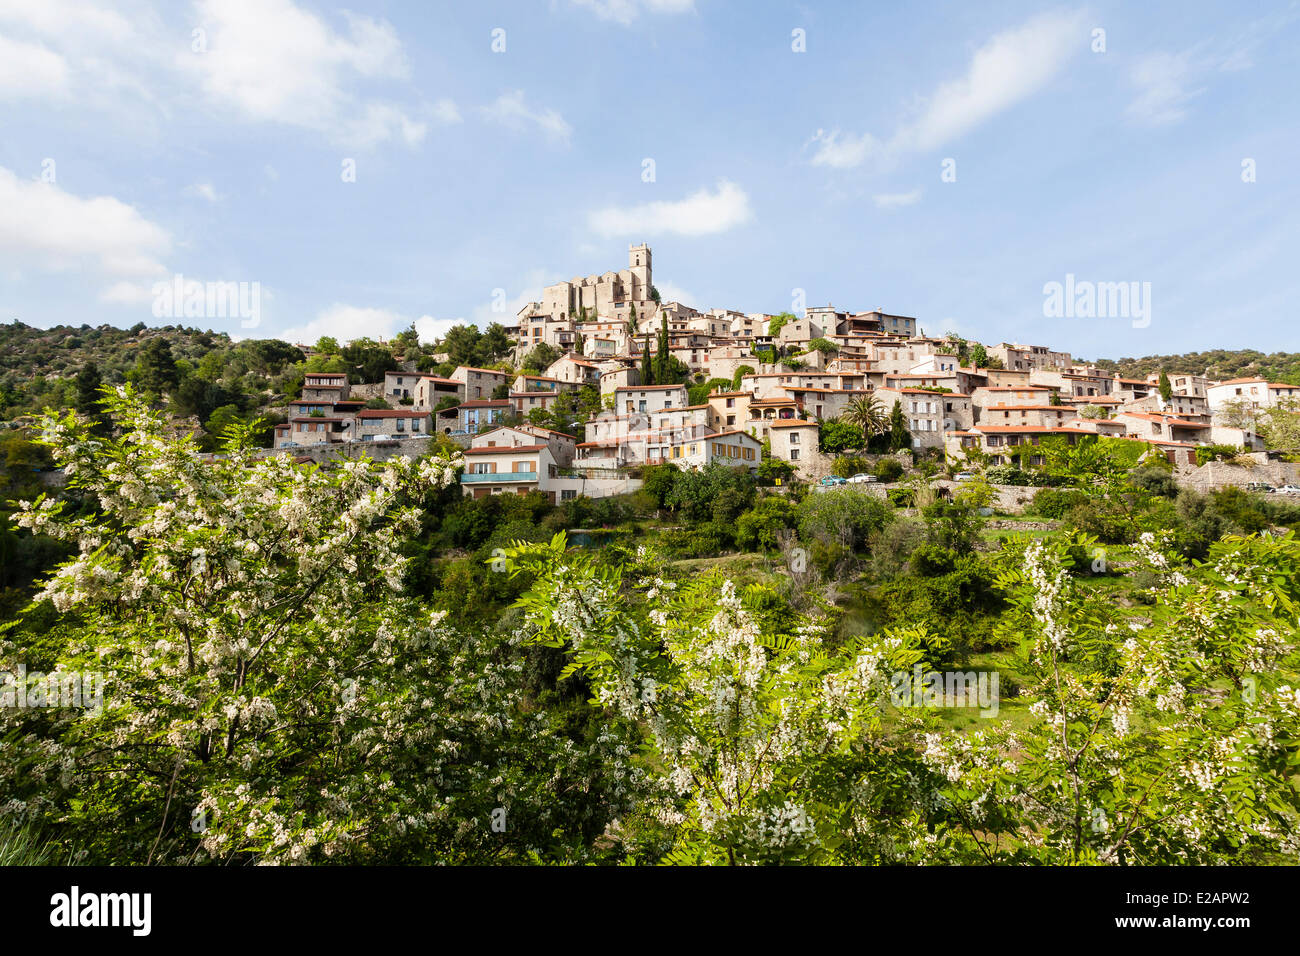 France, Pyrenees Orientales, Eus, labelled Les Plus Beaux Villages de France (The Most Beautiful Villages of France), Medieval Stock Photo